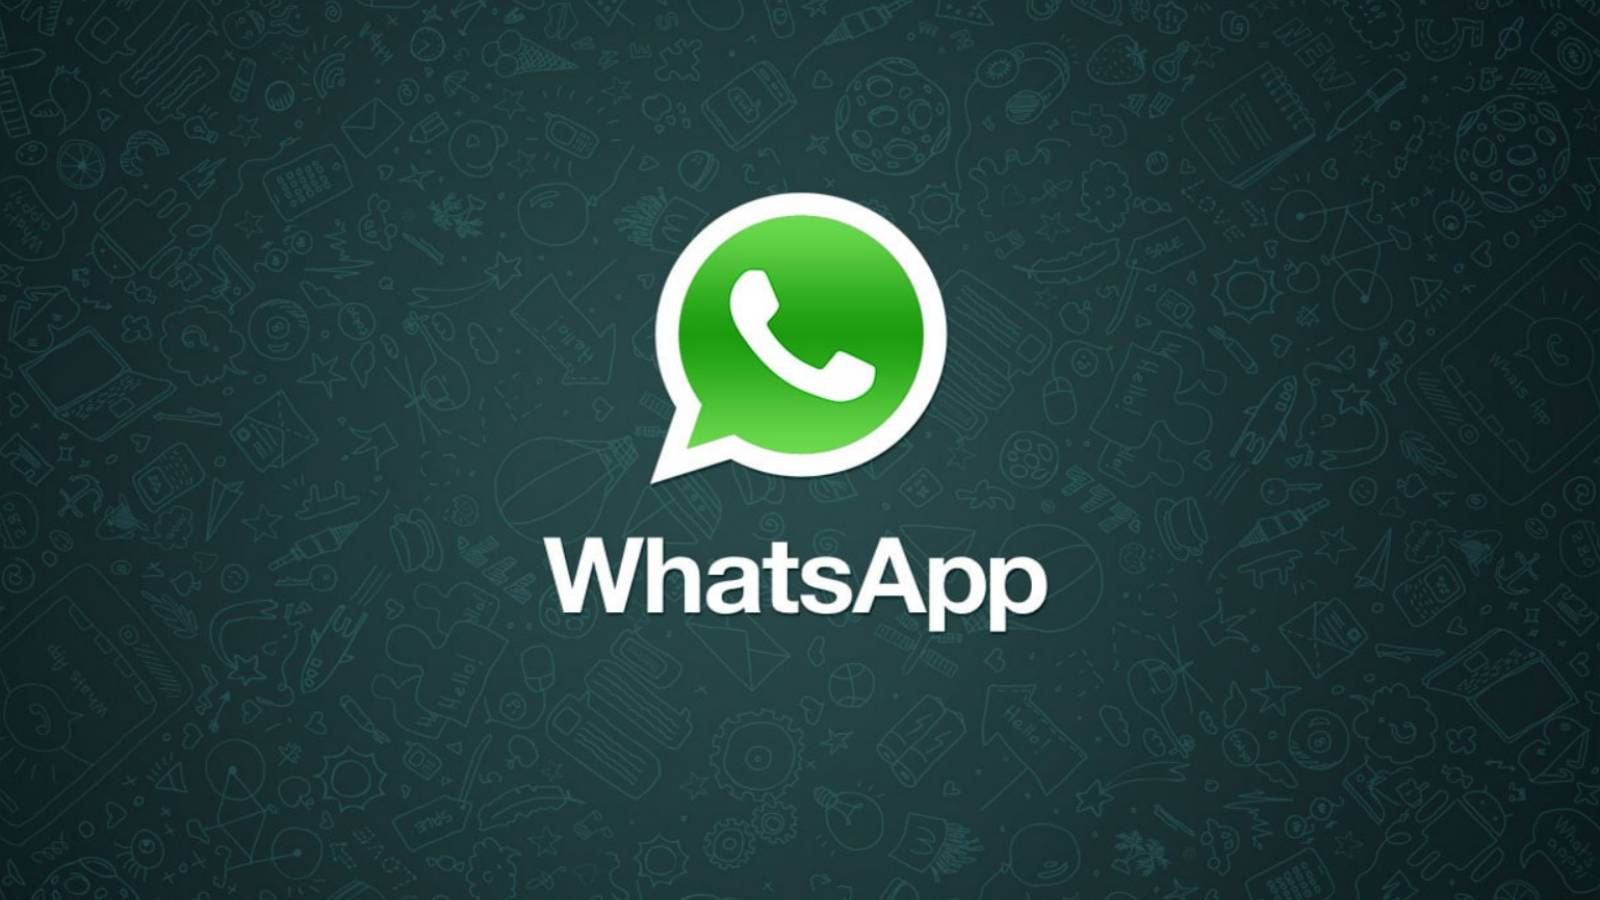 WhatsApp Change Surprise som väntar på iPhone-användare